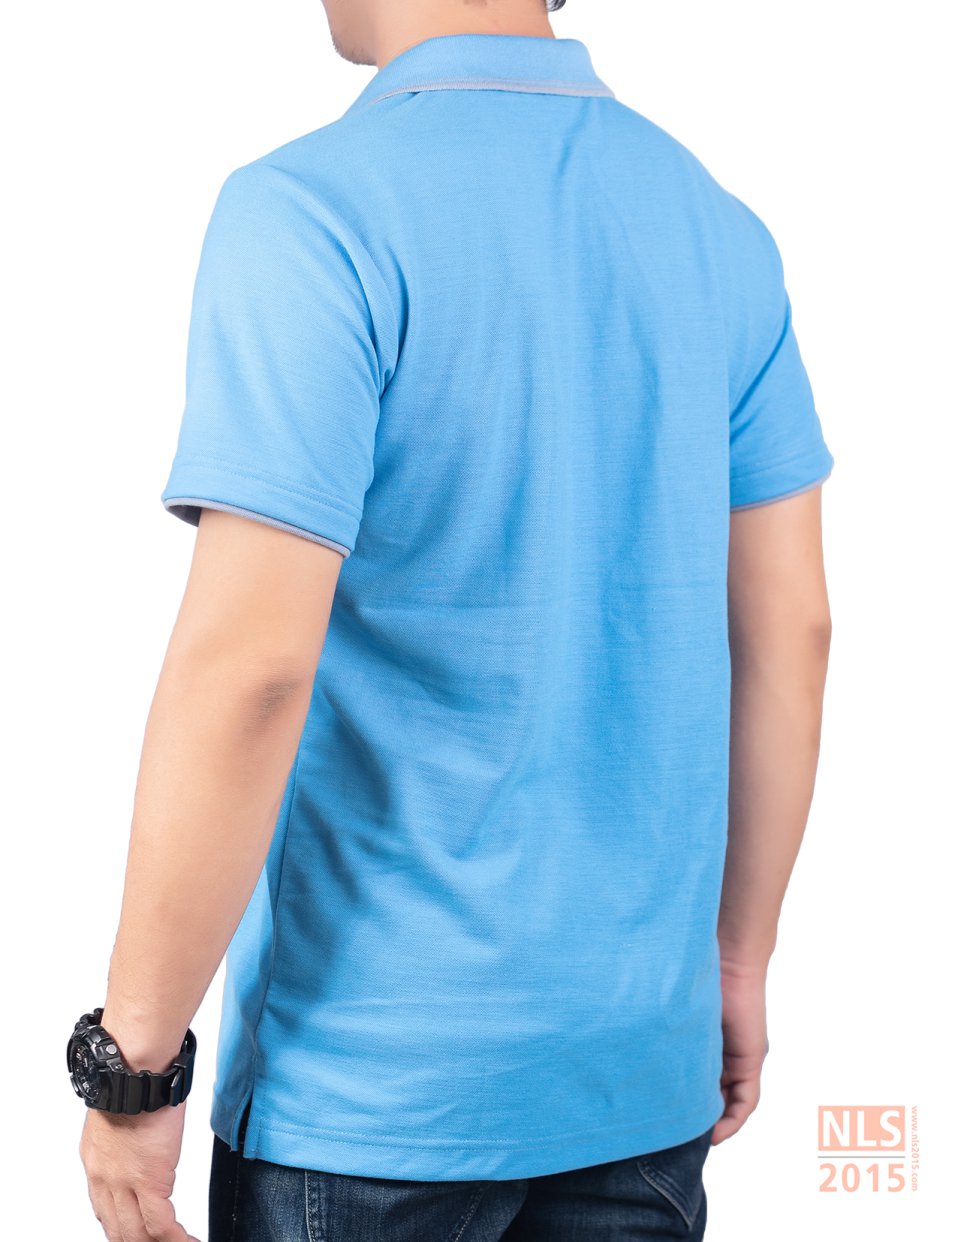 เสื้อโปโลเนื้อผ้า CVC สีฟ้า ขลิบสีเทา มีกระเป๋าอกซ้าย ปักอก 1 จุดรูปที่ 